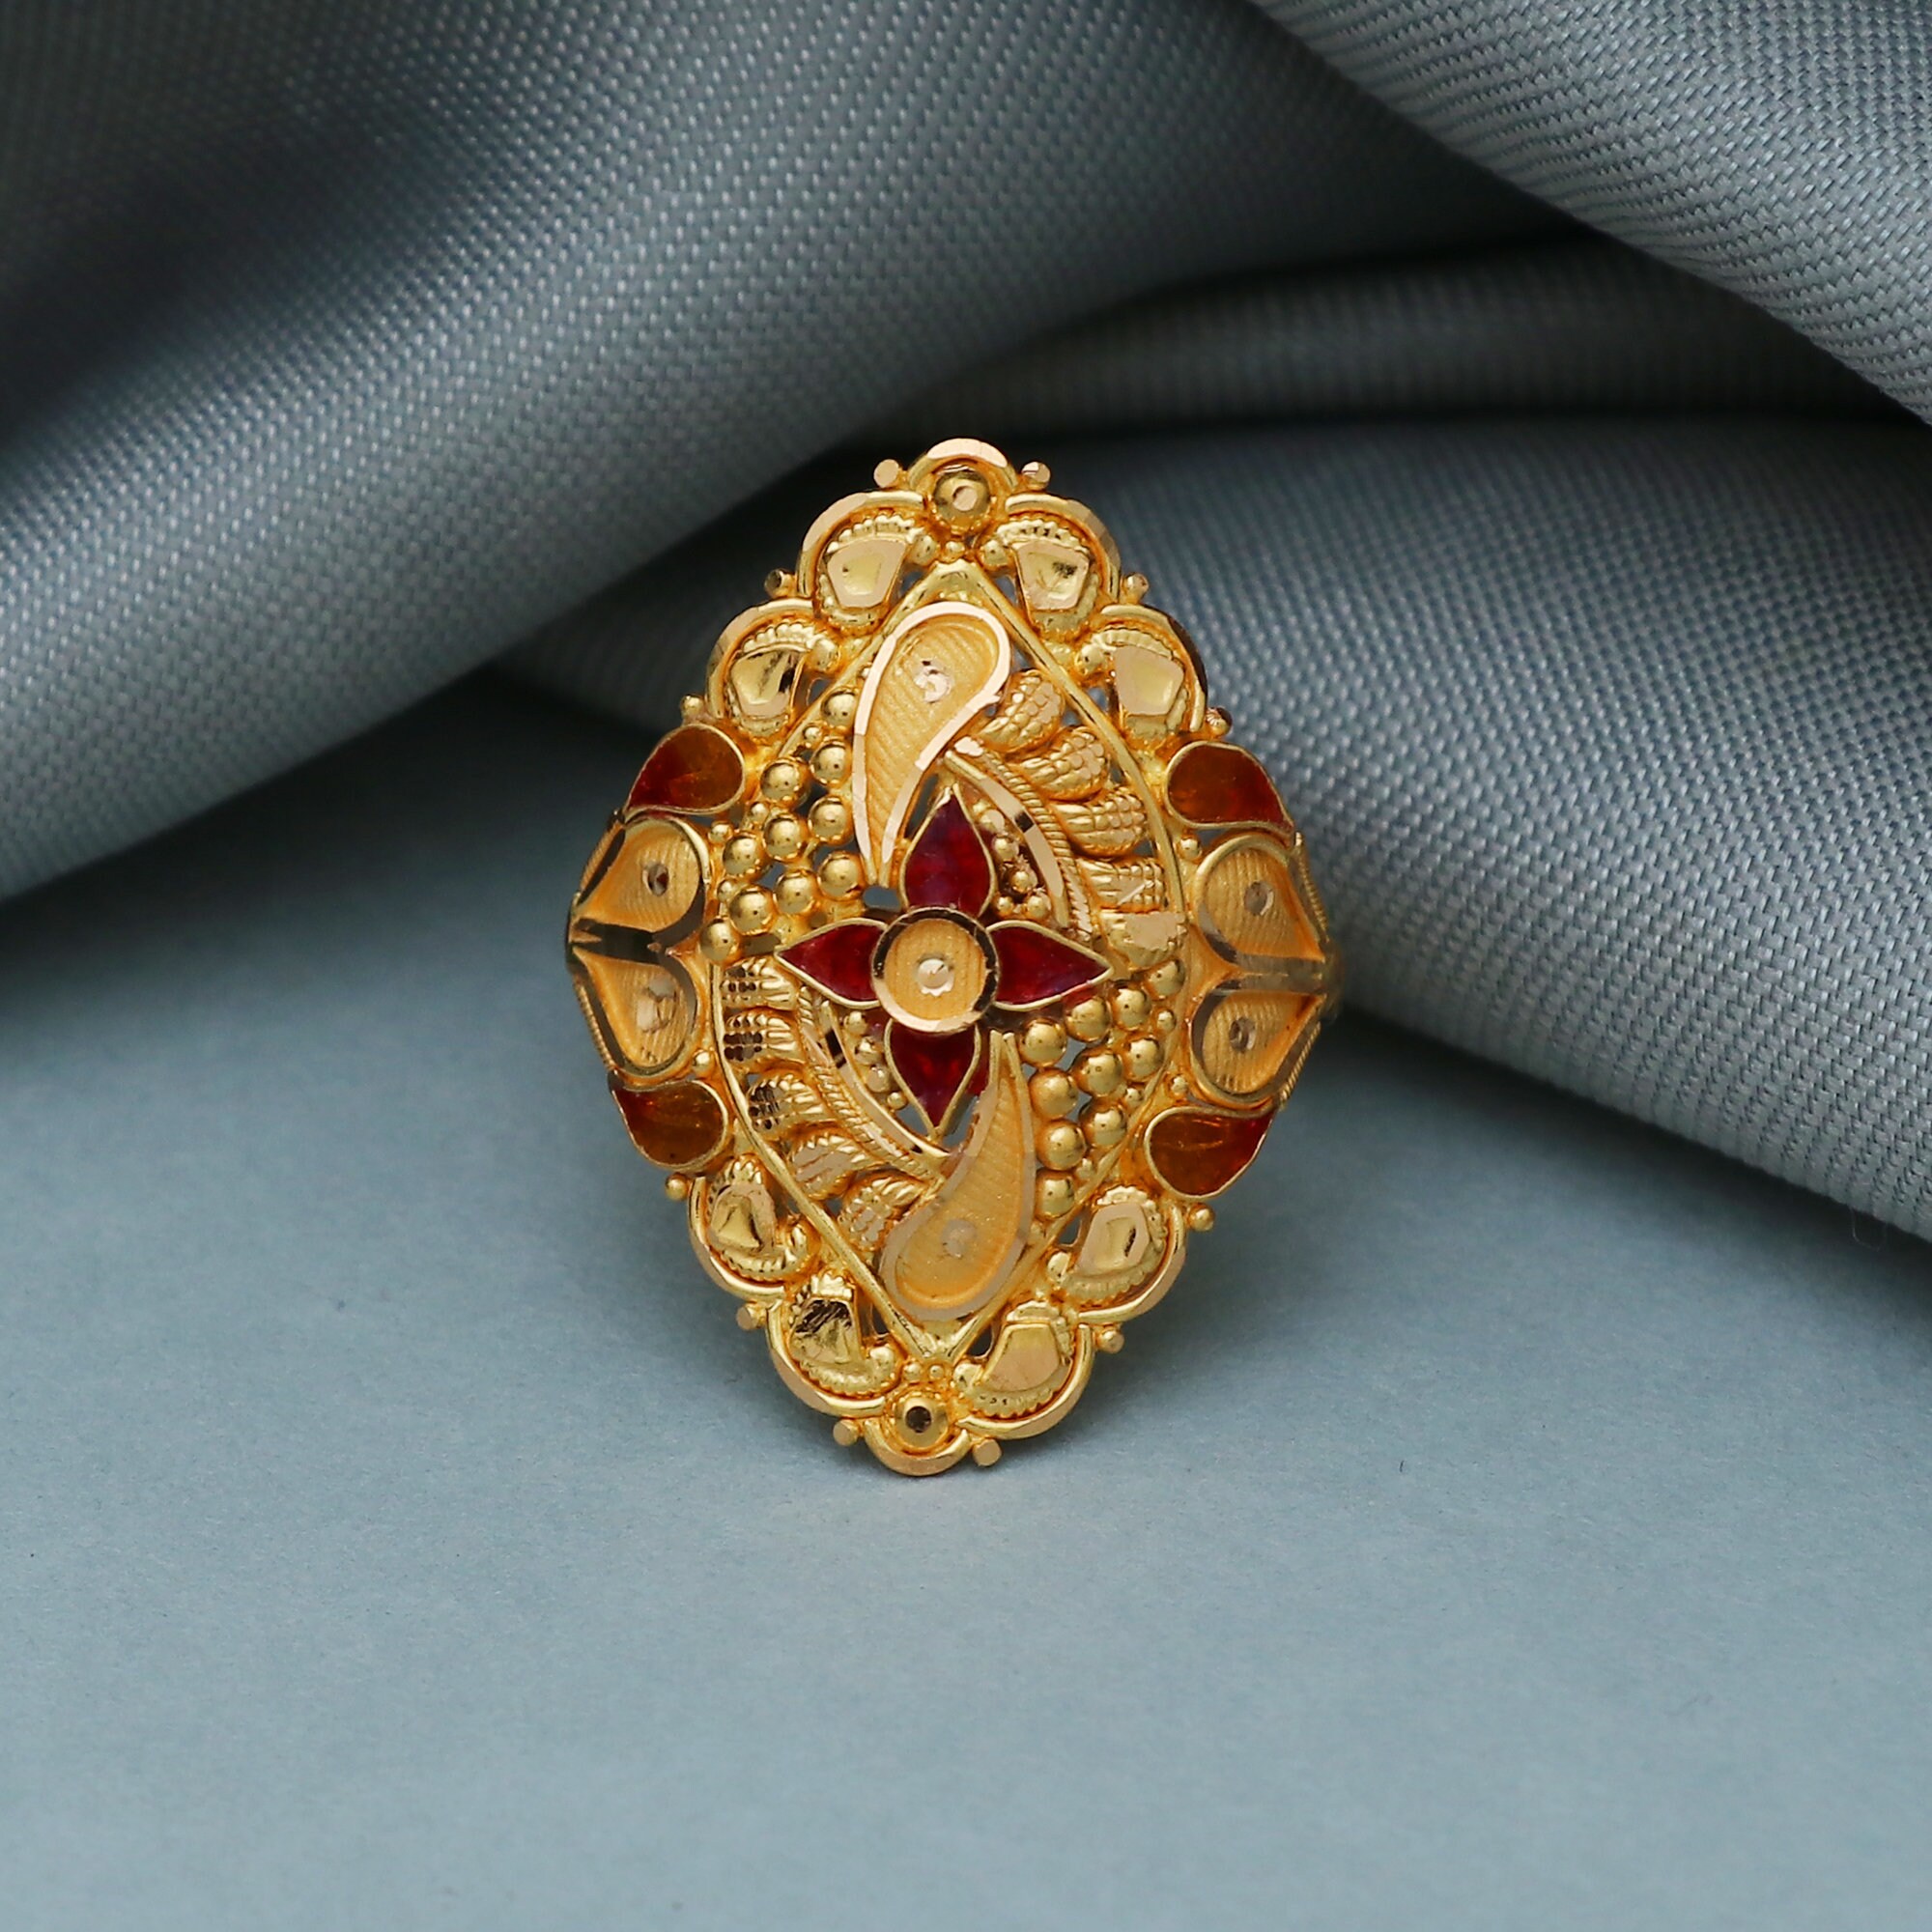 22 Karat Yellow Gold Ladies Fashion Ring - RG-348